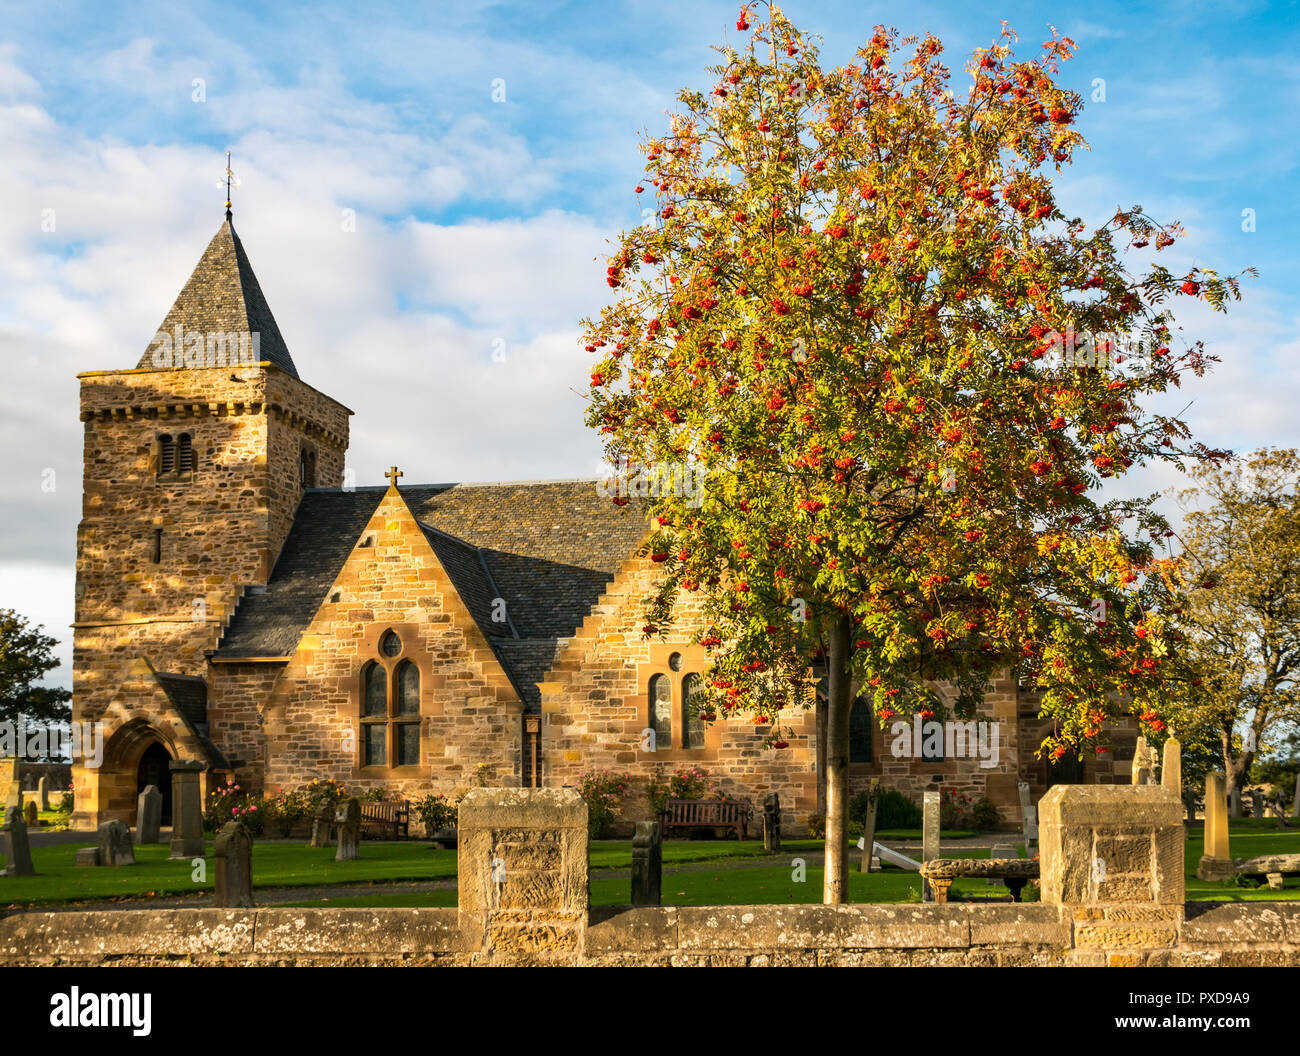 Aberlady Parish Church beleuchtet von der Abendsonne mit blühender Eberesche) Pomes oder Beeren im Herbst, East Lothian, Schottland, Großbritannien Stockfoto